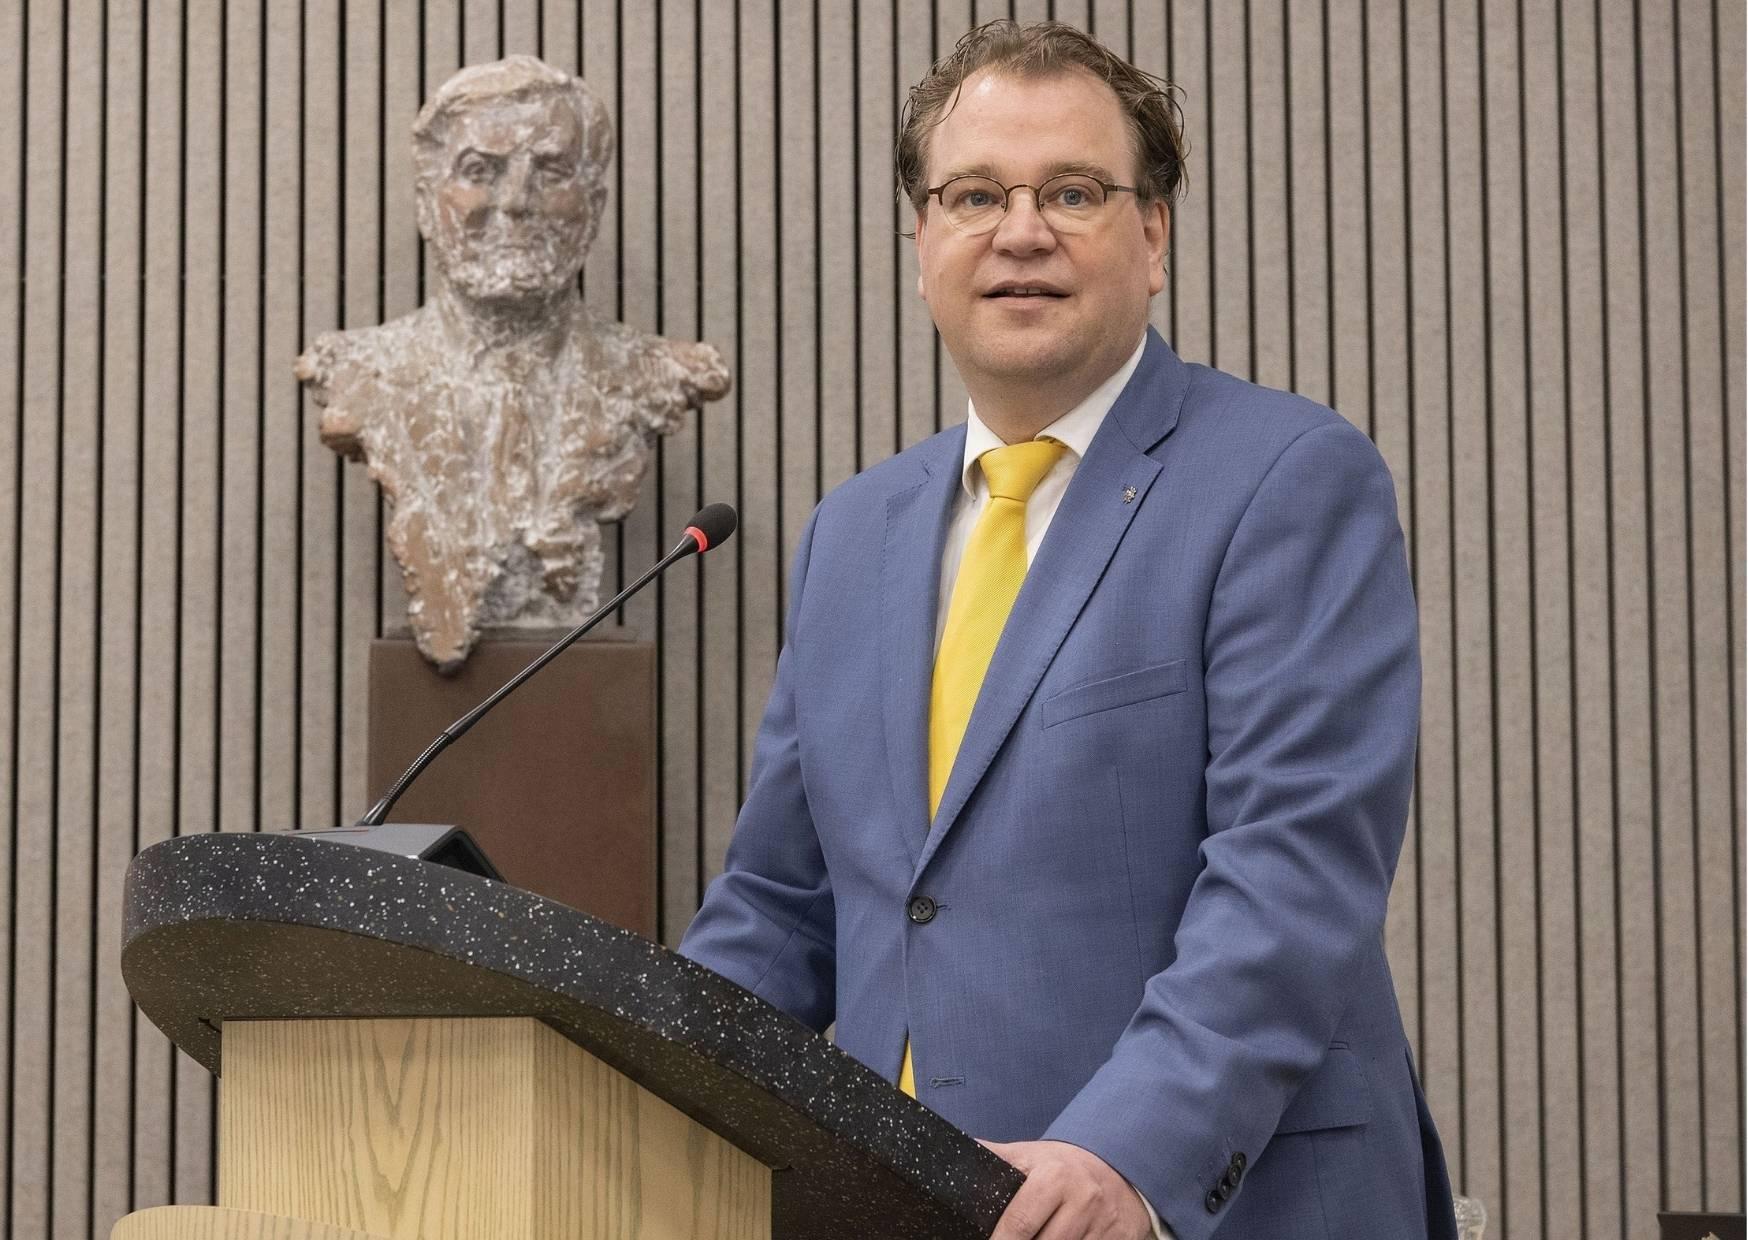 Paul Vermast spreekt als plaatsvervangend voorzitter de gemeenteraad toe bij het afscheid van de raad 2018-2022